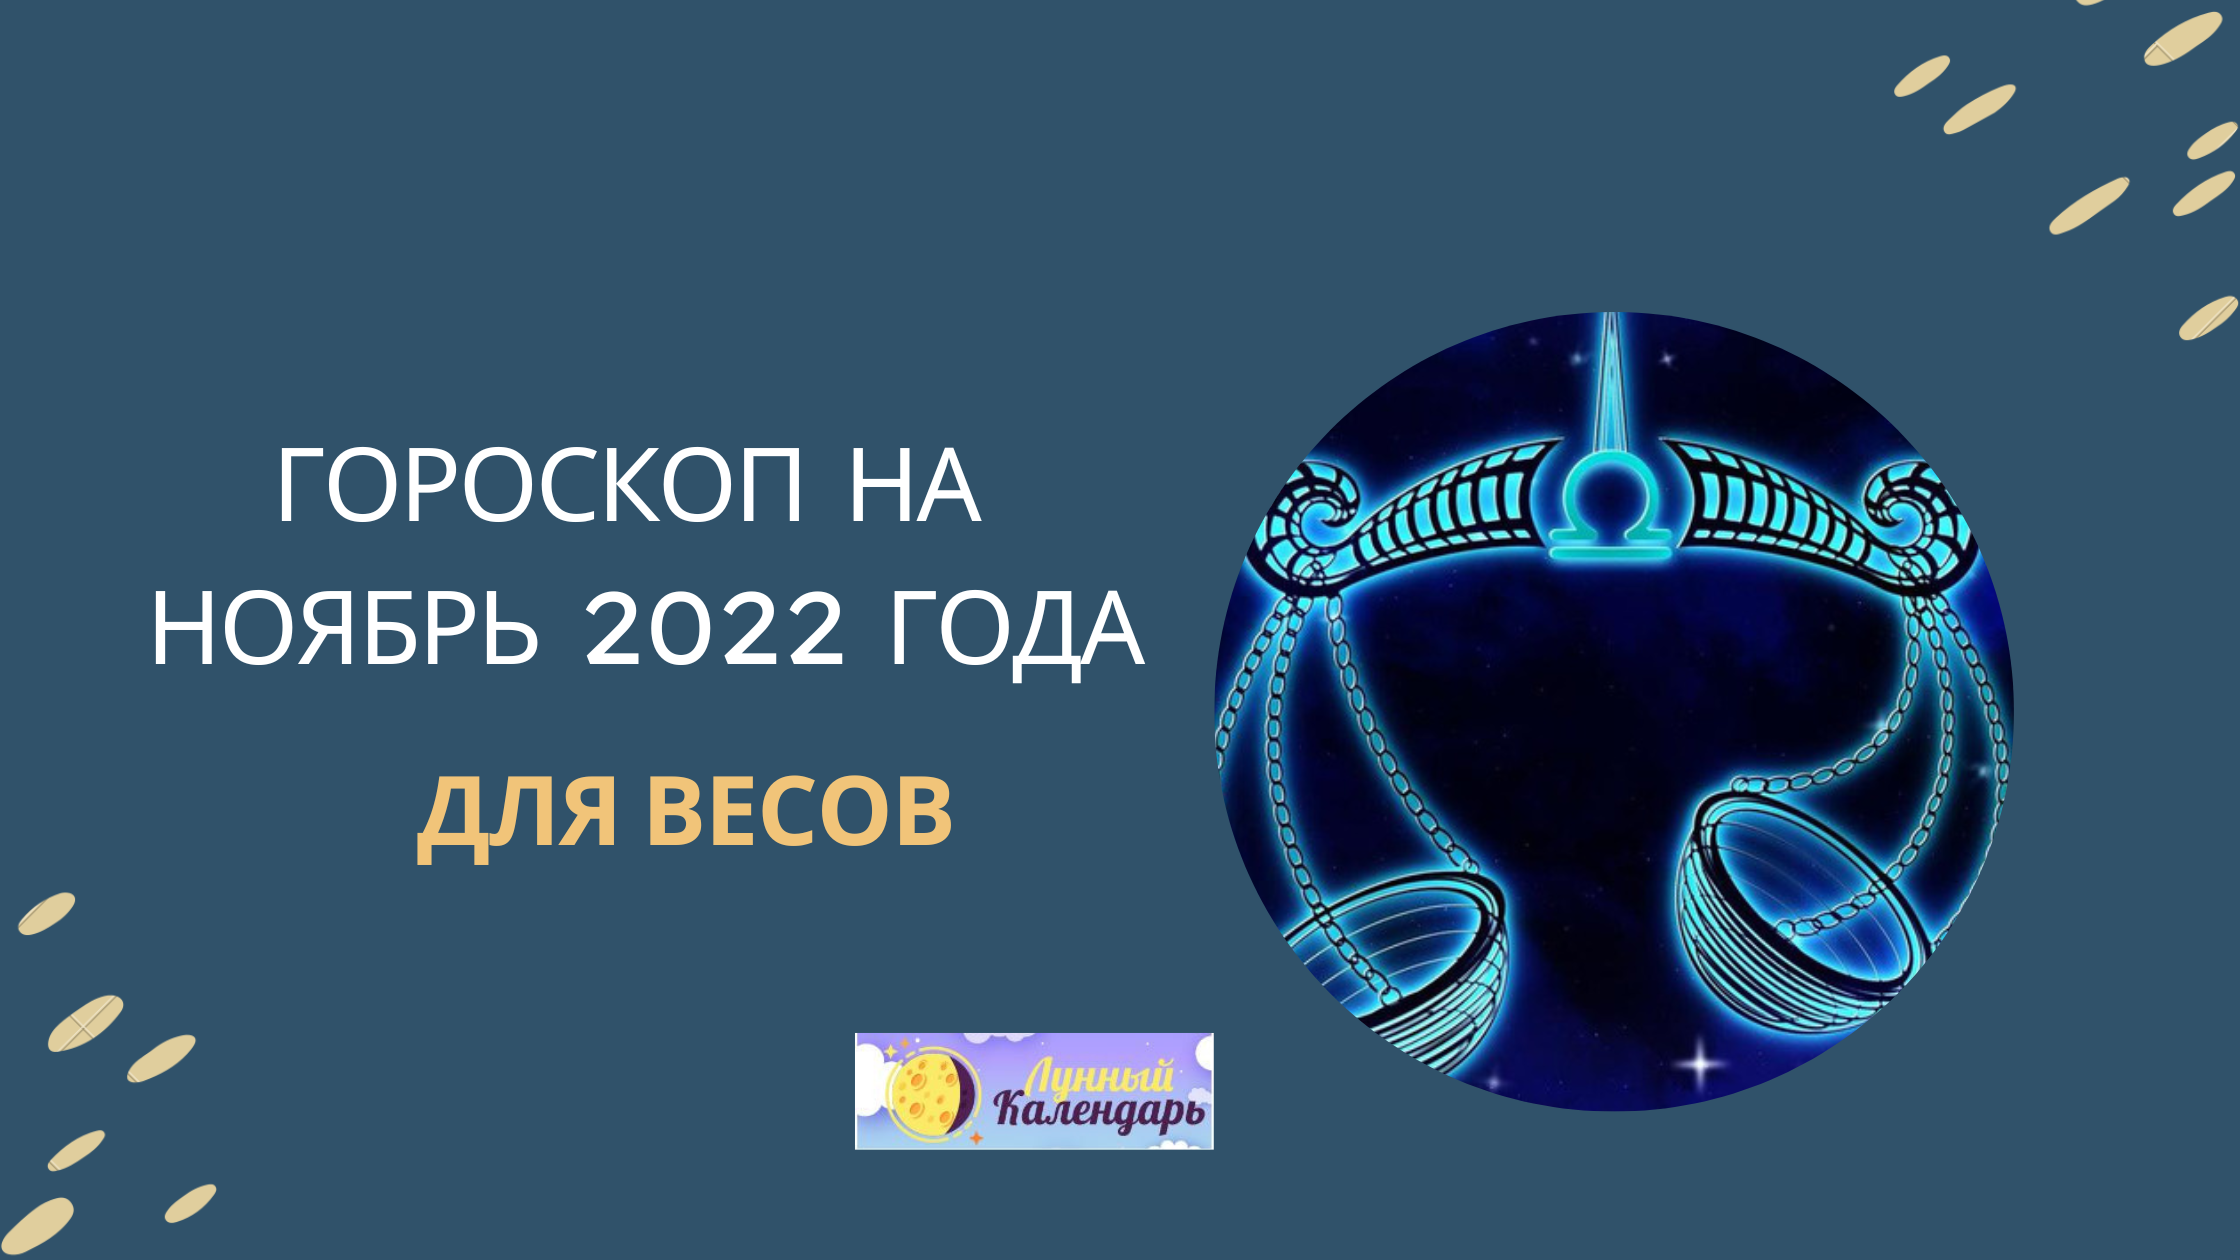 Гороскоп на ноябрь 2022 года — Овен